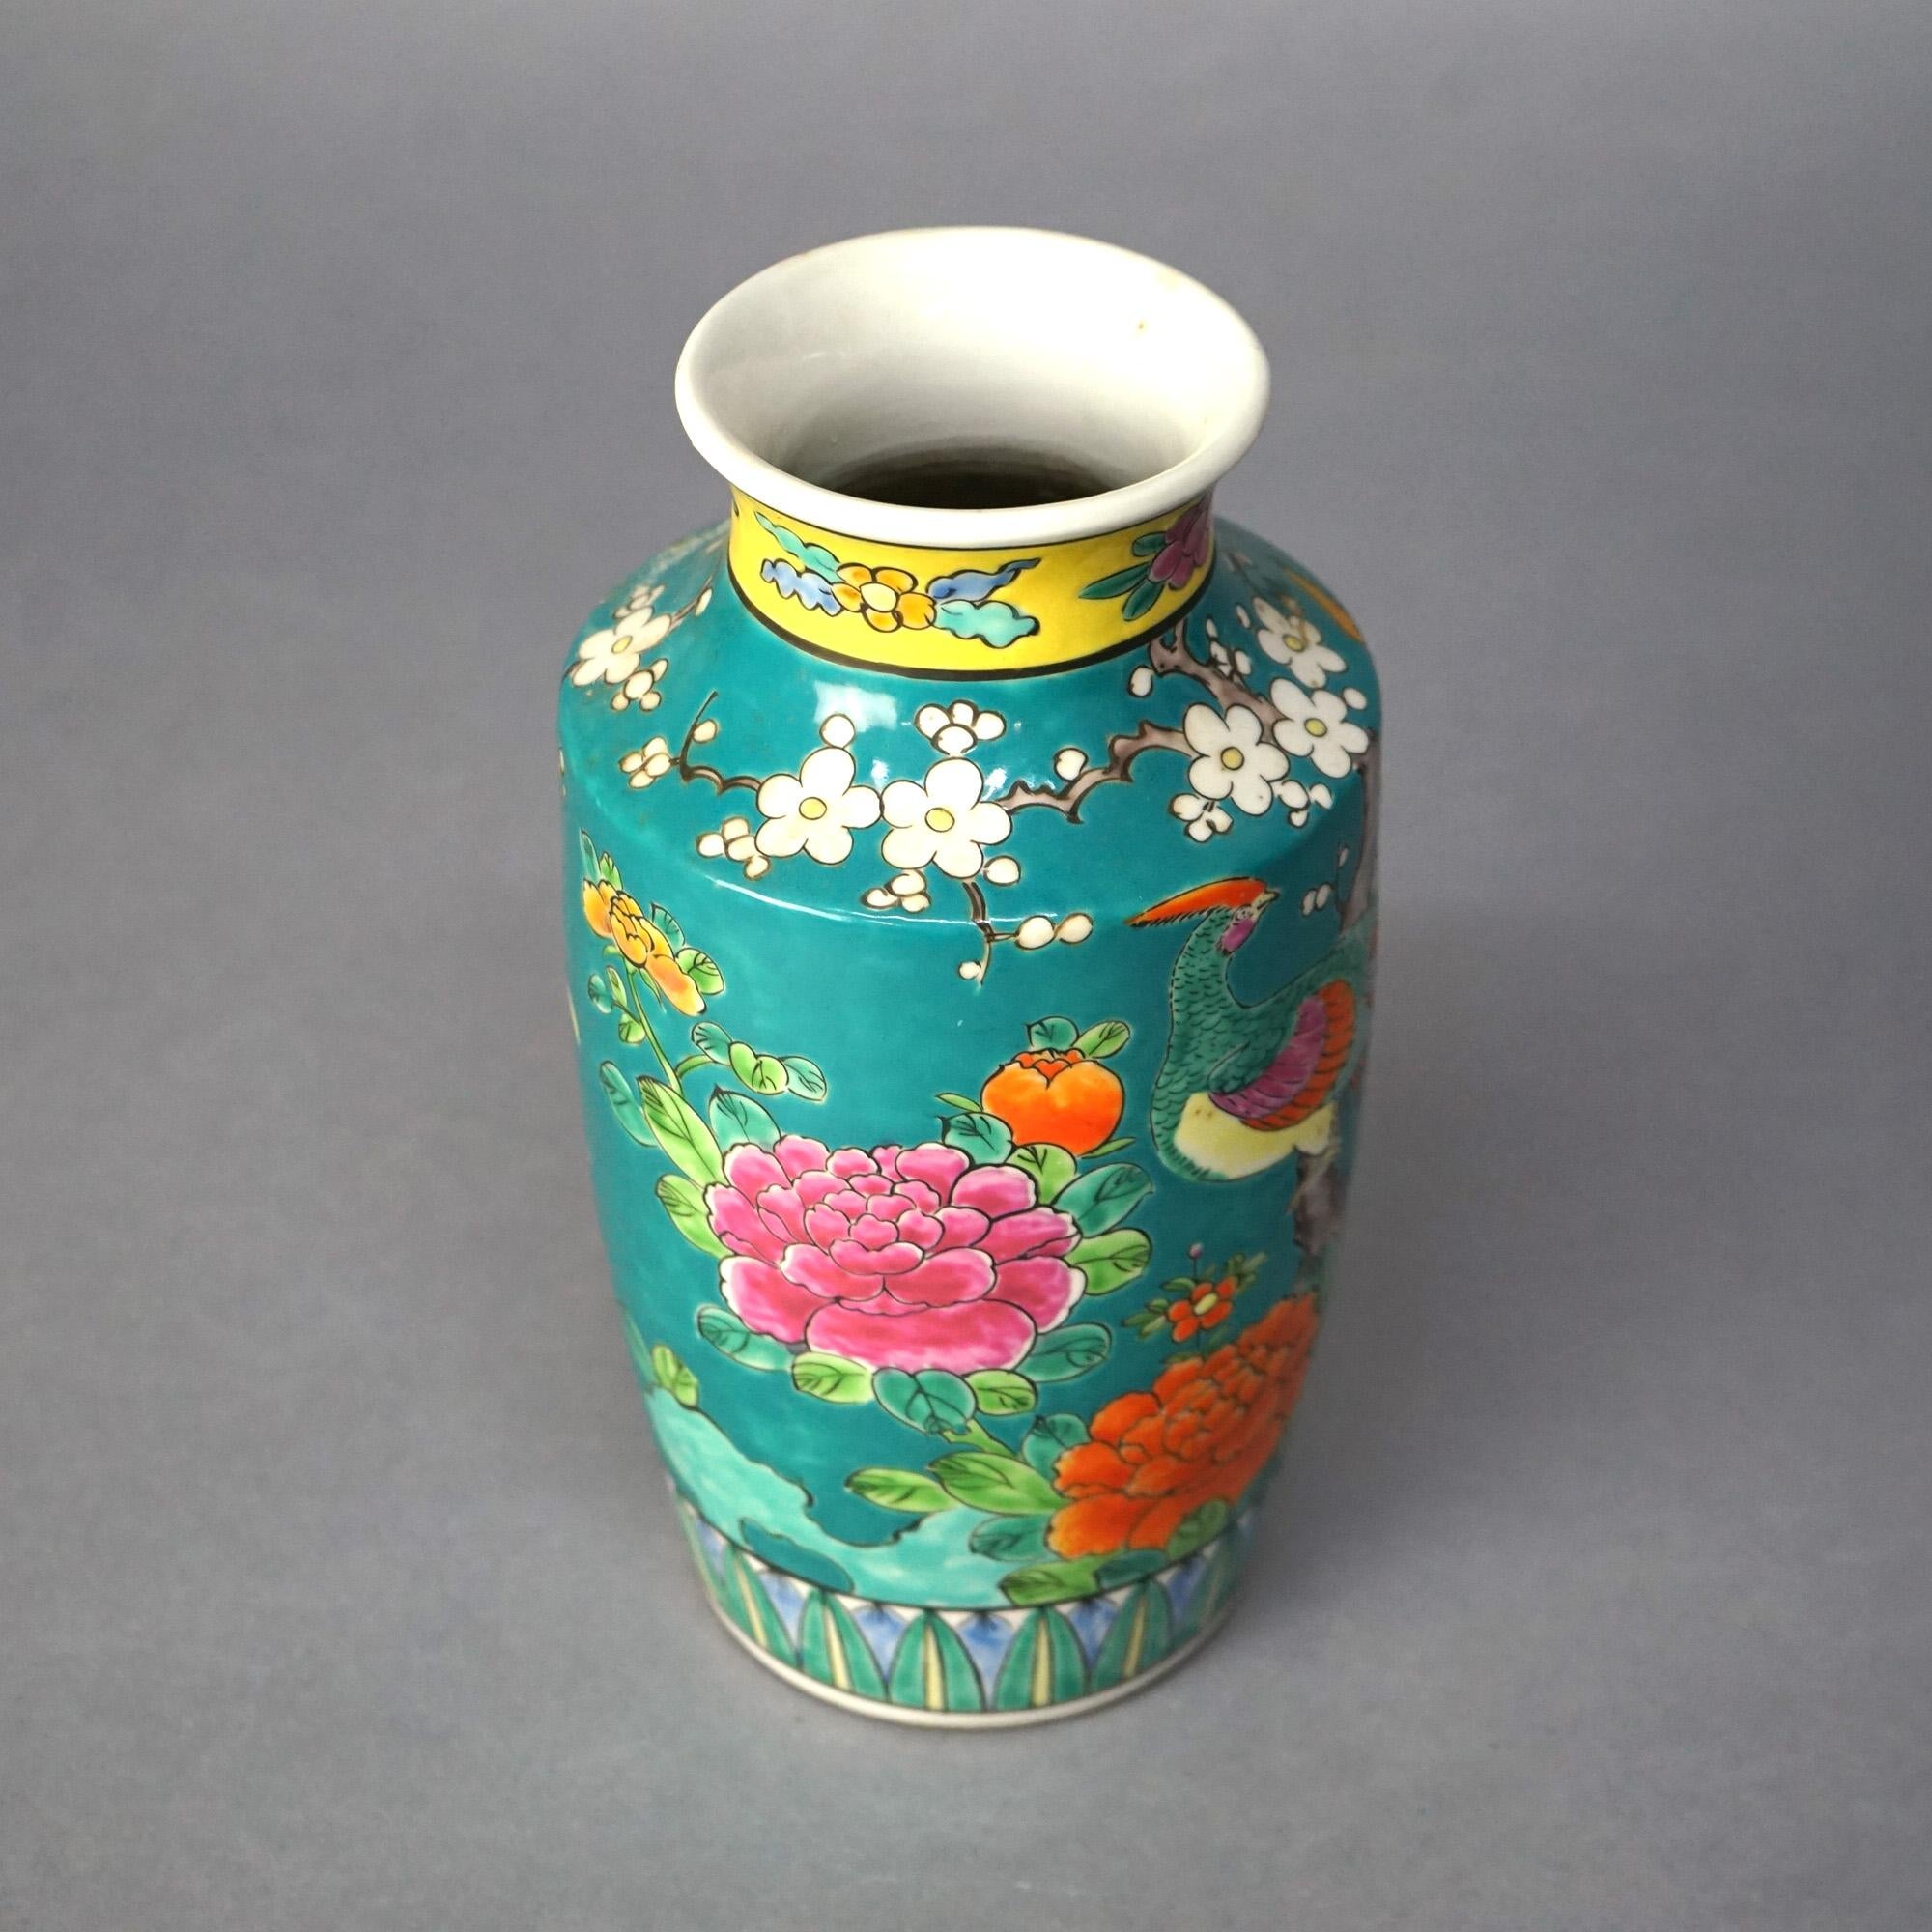 Antike japanische Porzellan emailliert Garten Szene Vase mit Vögeln und Blumen C1910

Maße: 10''H x 5''B x 5''T